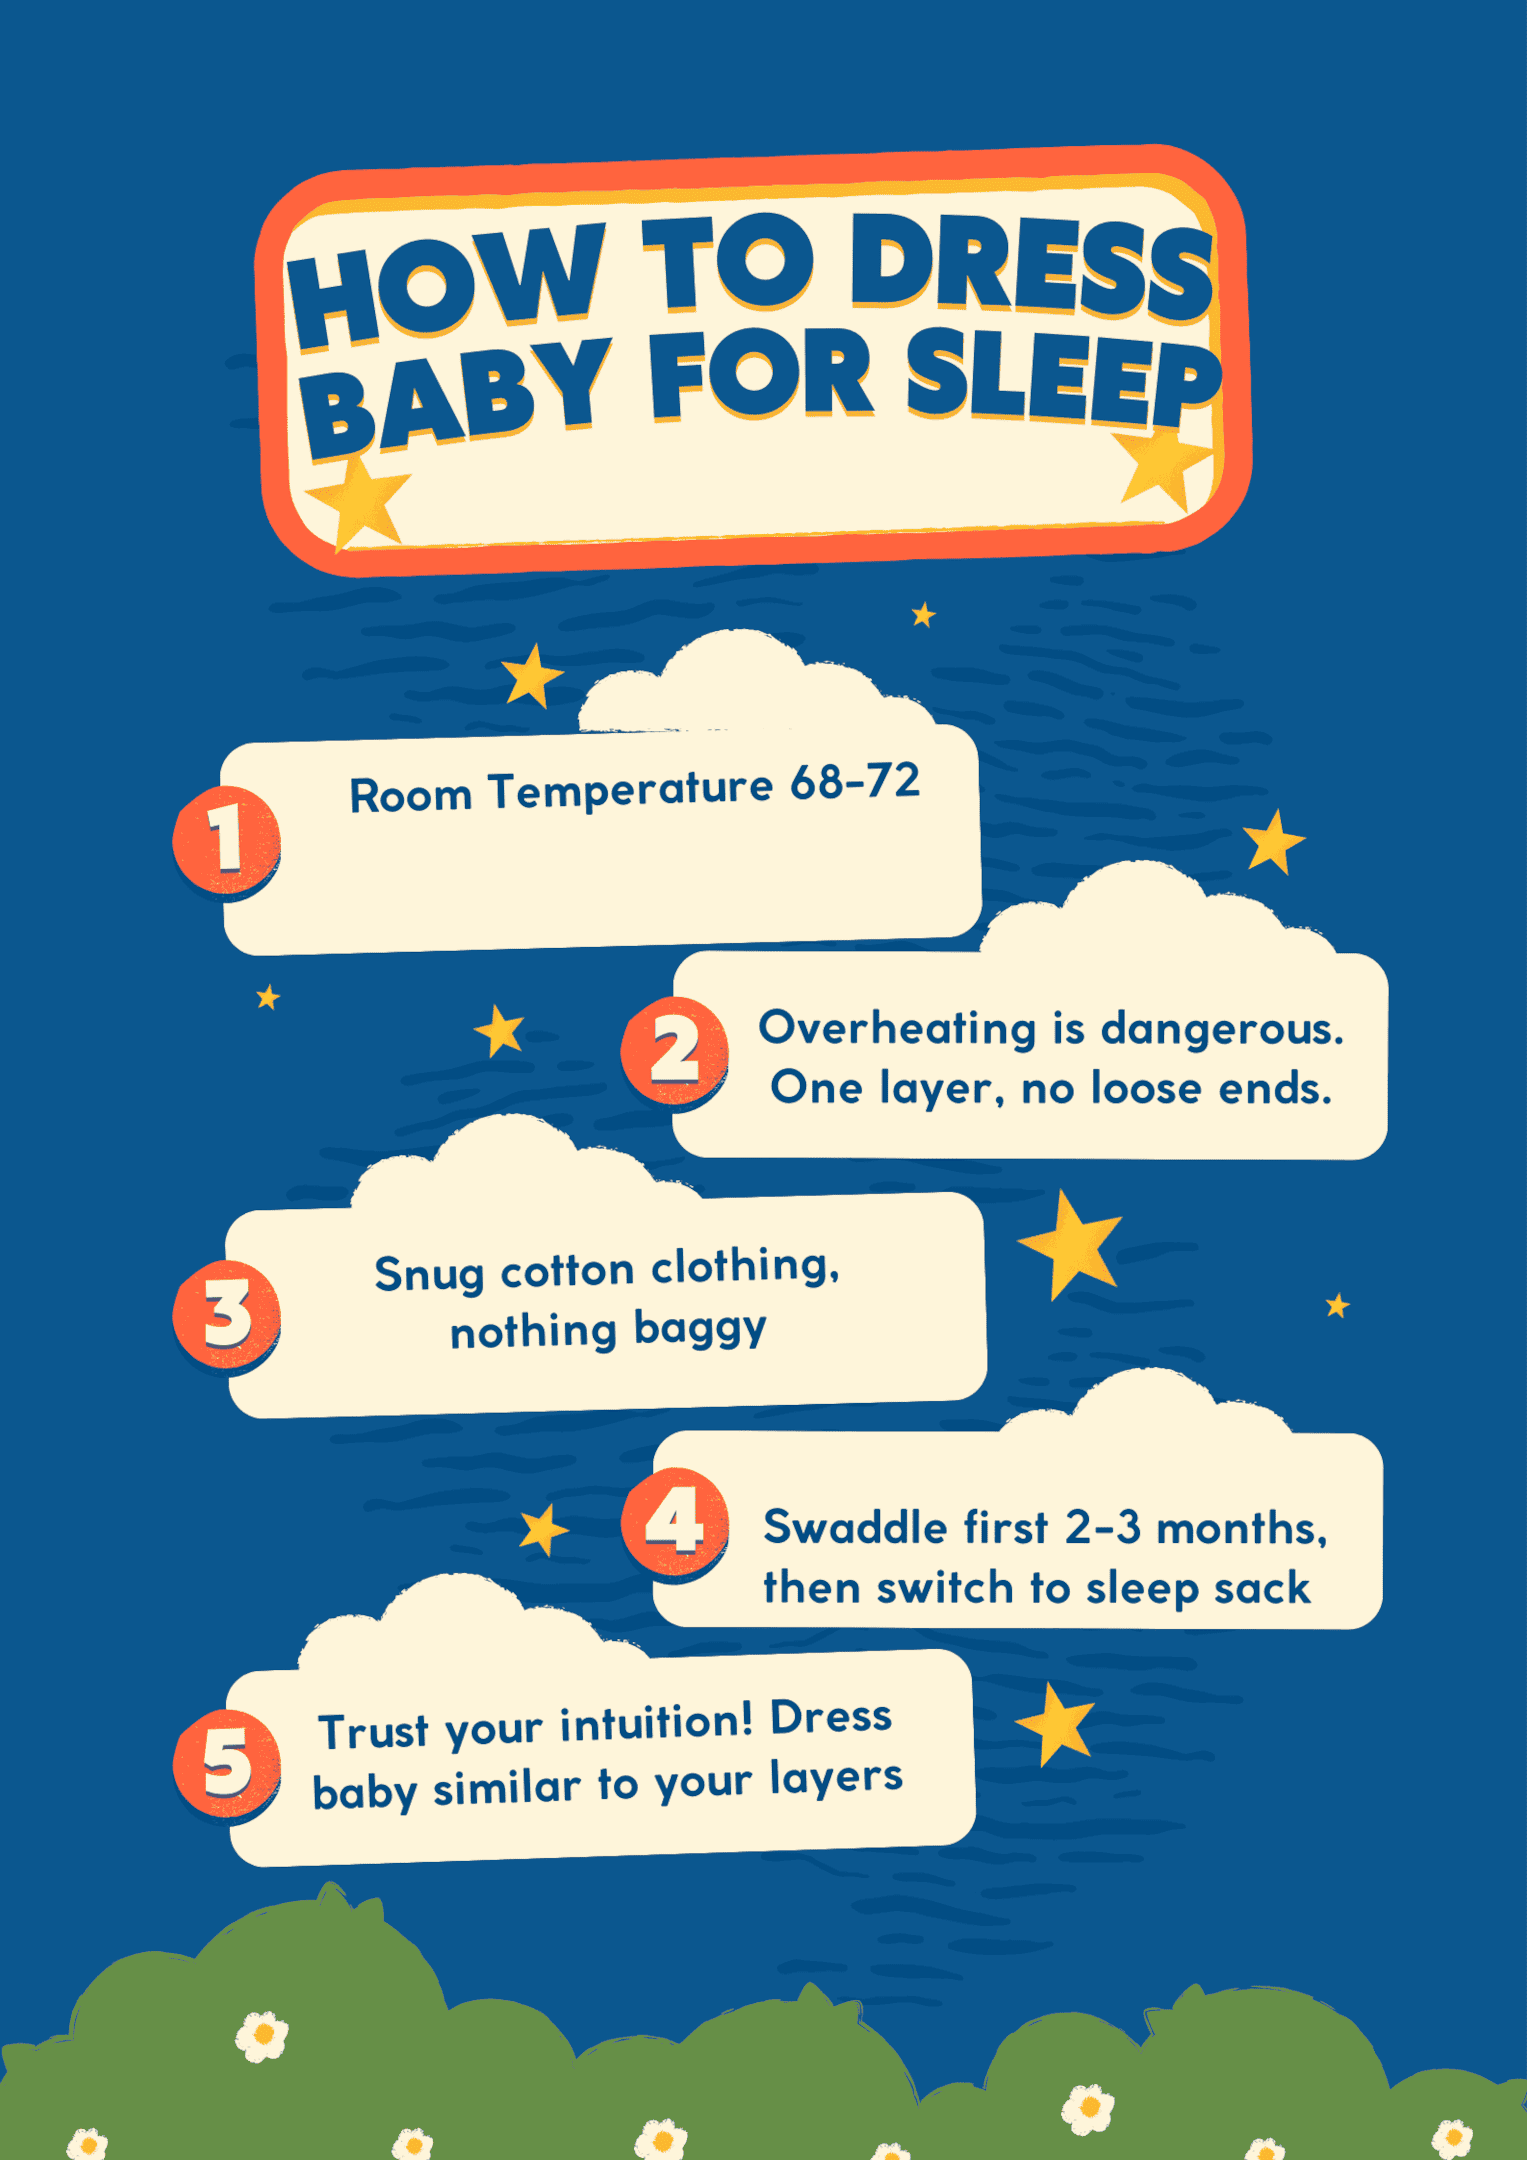 How to Dress Baby for Sleep Key Takeaways